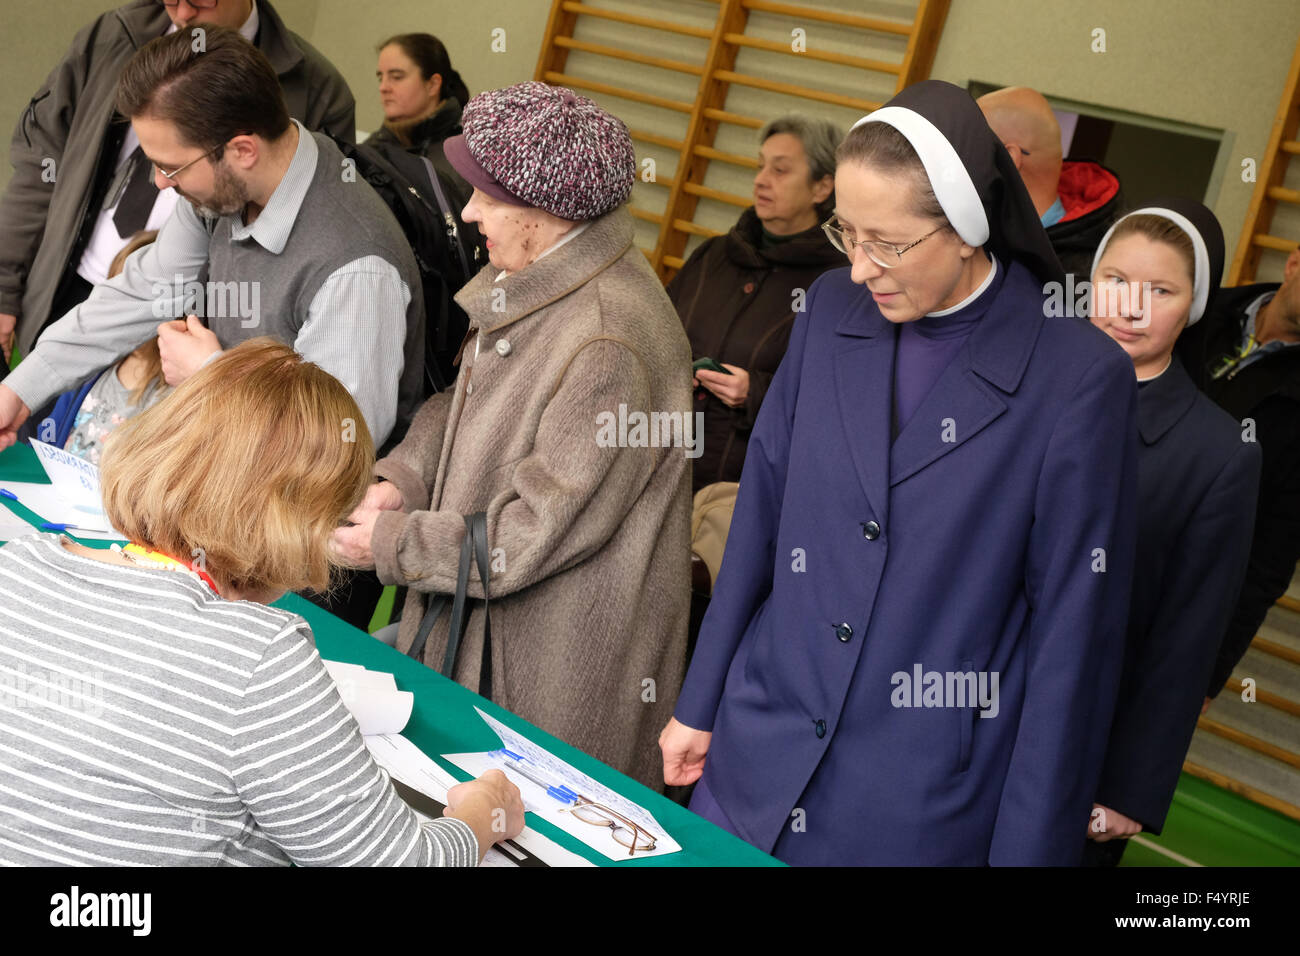 Warschau, Polen - Sonntag, 25. Oktober 2015 - Wahlen - Wähler besuchen eine Abstimmung Wahllokal in einer Schule in der Altstadt von Warschau.  Das Foto zeigt Anwohner einschließlich der Nonnen, die Schlange, um zu stimmen. Stockfoto